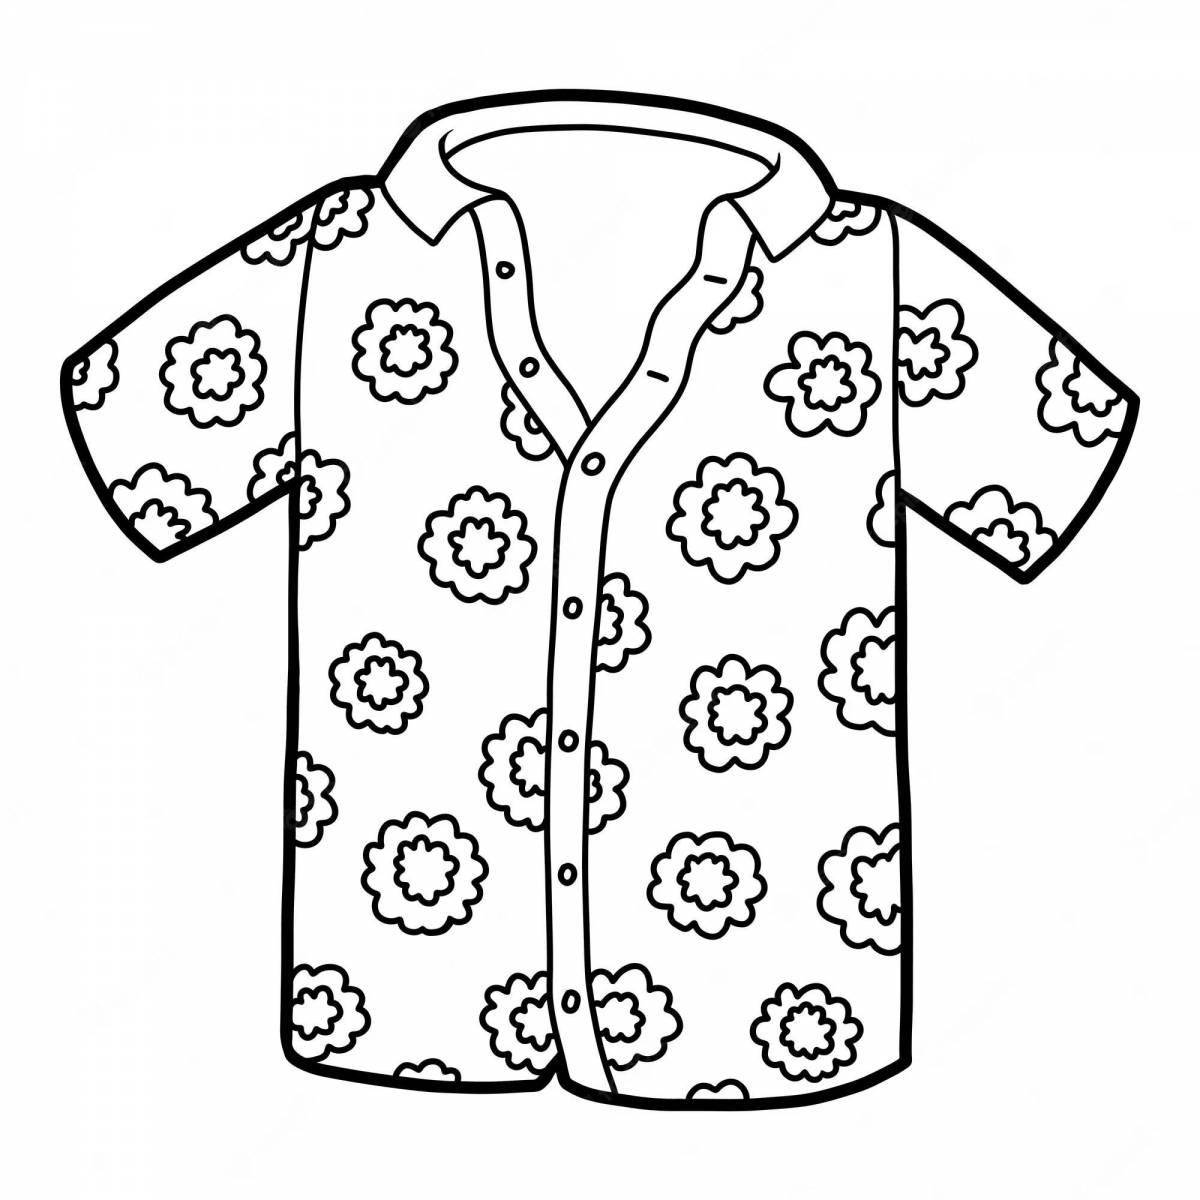 Увлекательная раскраска с рубашками для детей 2-3 лет